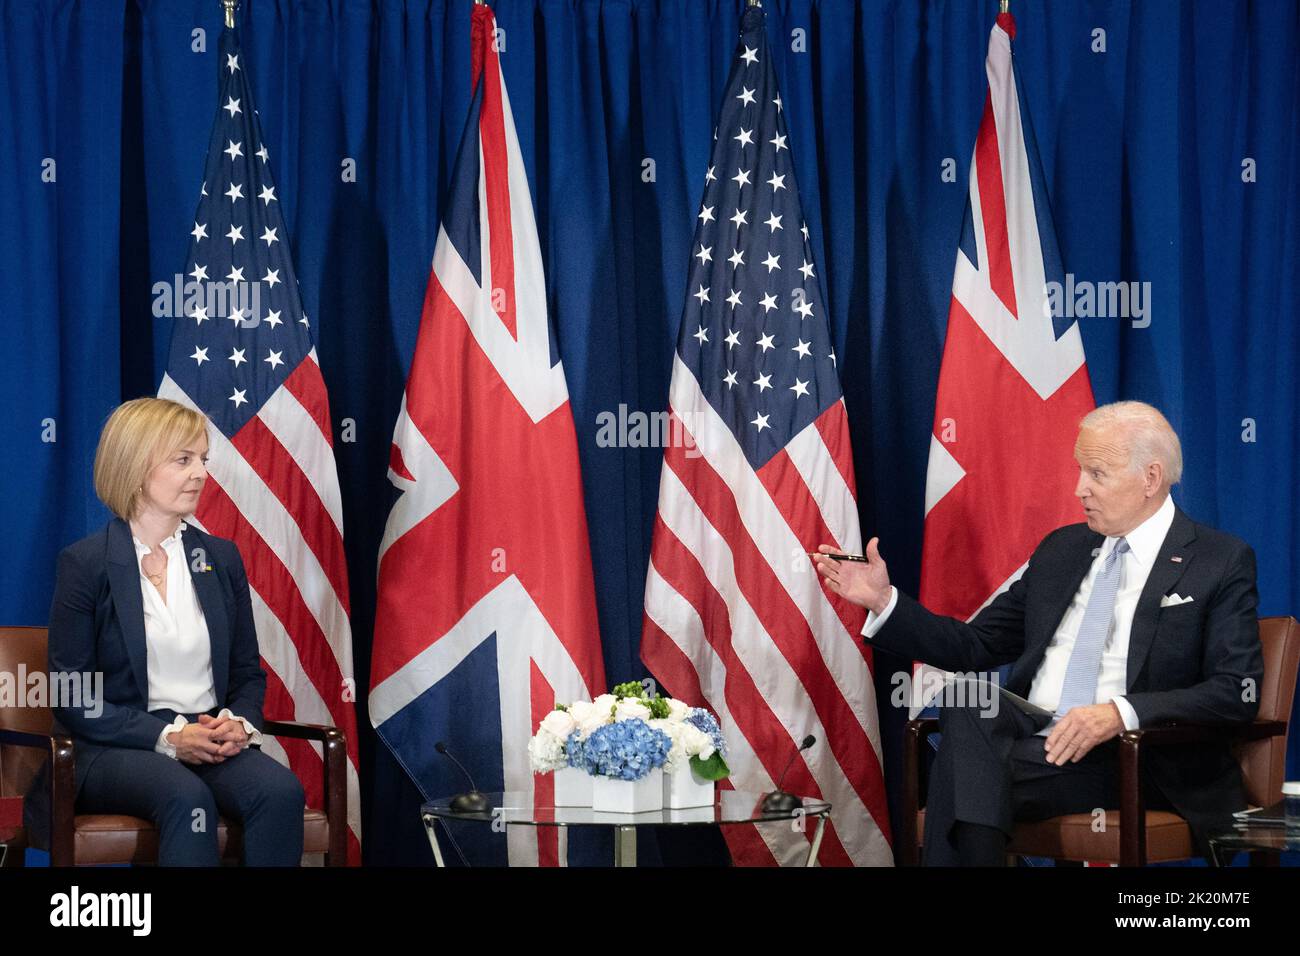 La Primera Ministra Liz Truss celebra una reunión bilateral con el Presidente de los Estados Unidos, Joe Biden, en la sede de las Naciones Unidas en Nueva York, durante su visita a los Estados Unidos para asistir a la Asamblea General de las Naciones Unidas de 77th. Fecha de la foto: Miércoles 21 de septiembre de 2022. Foto de stock